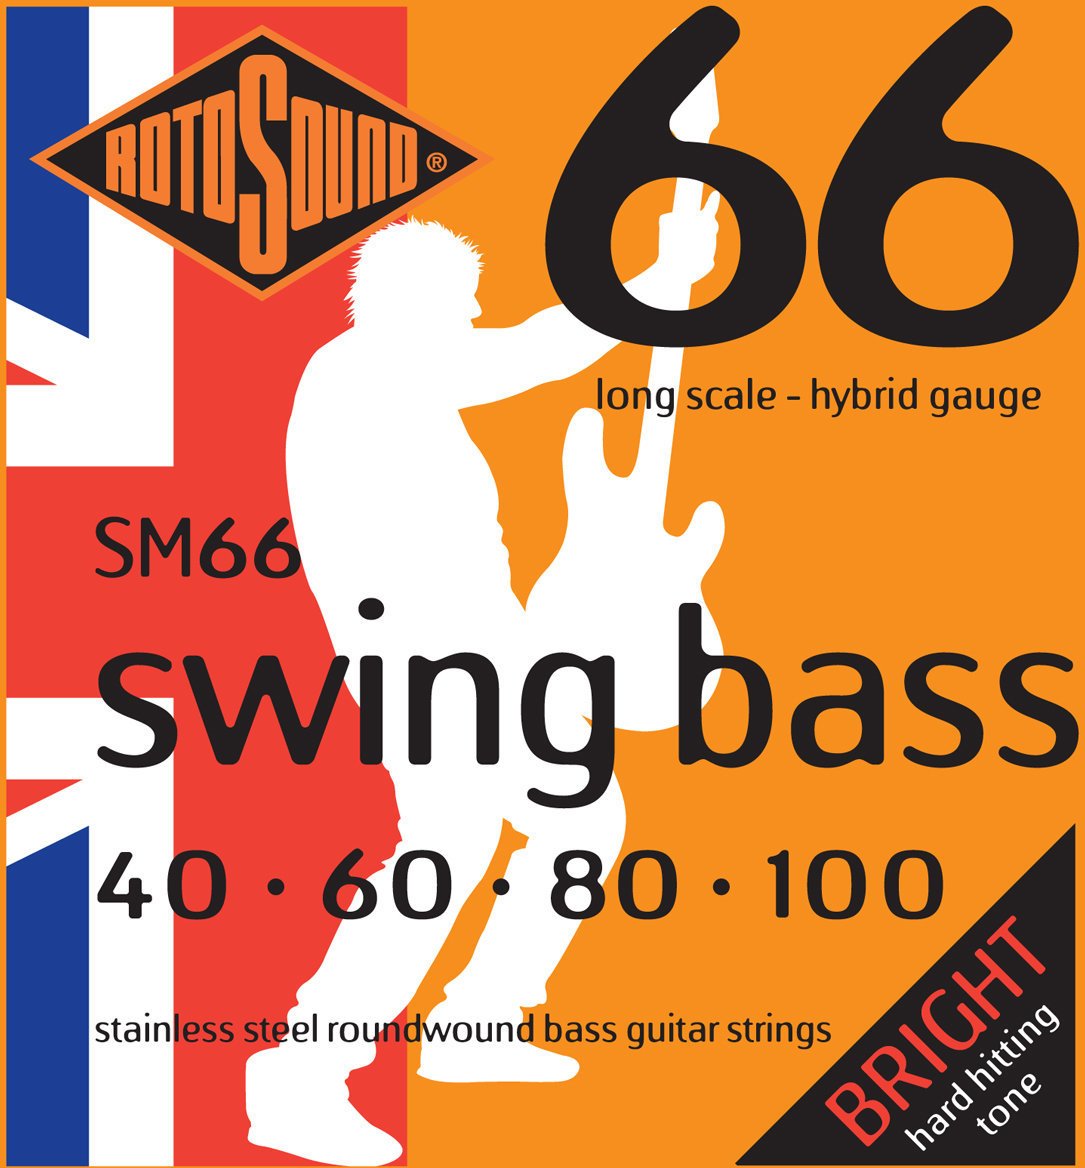 Struny pro baskytaru Rotosound SM66